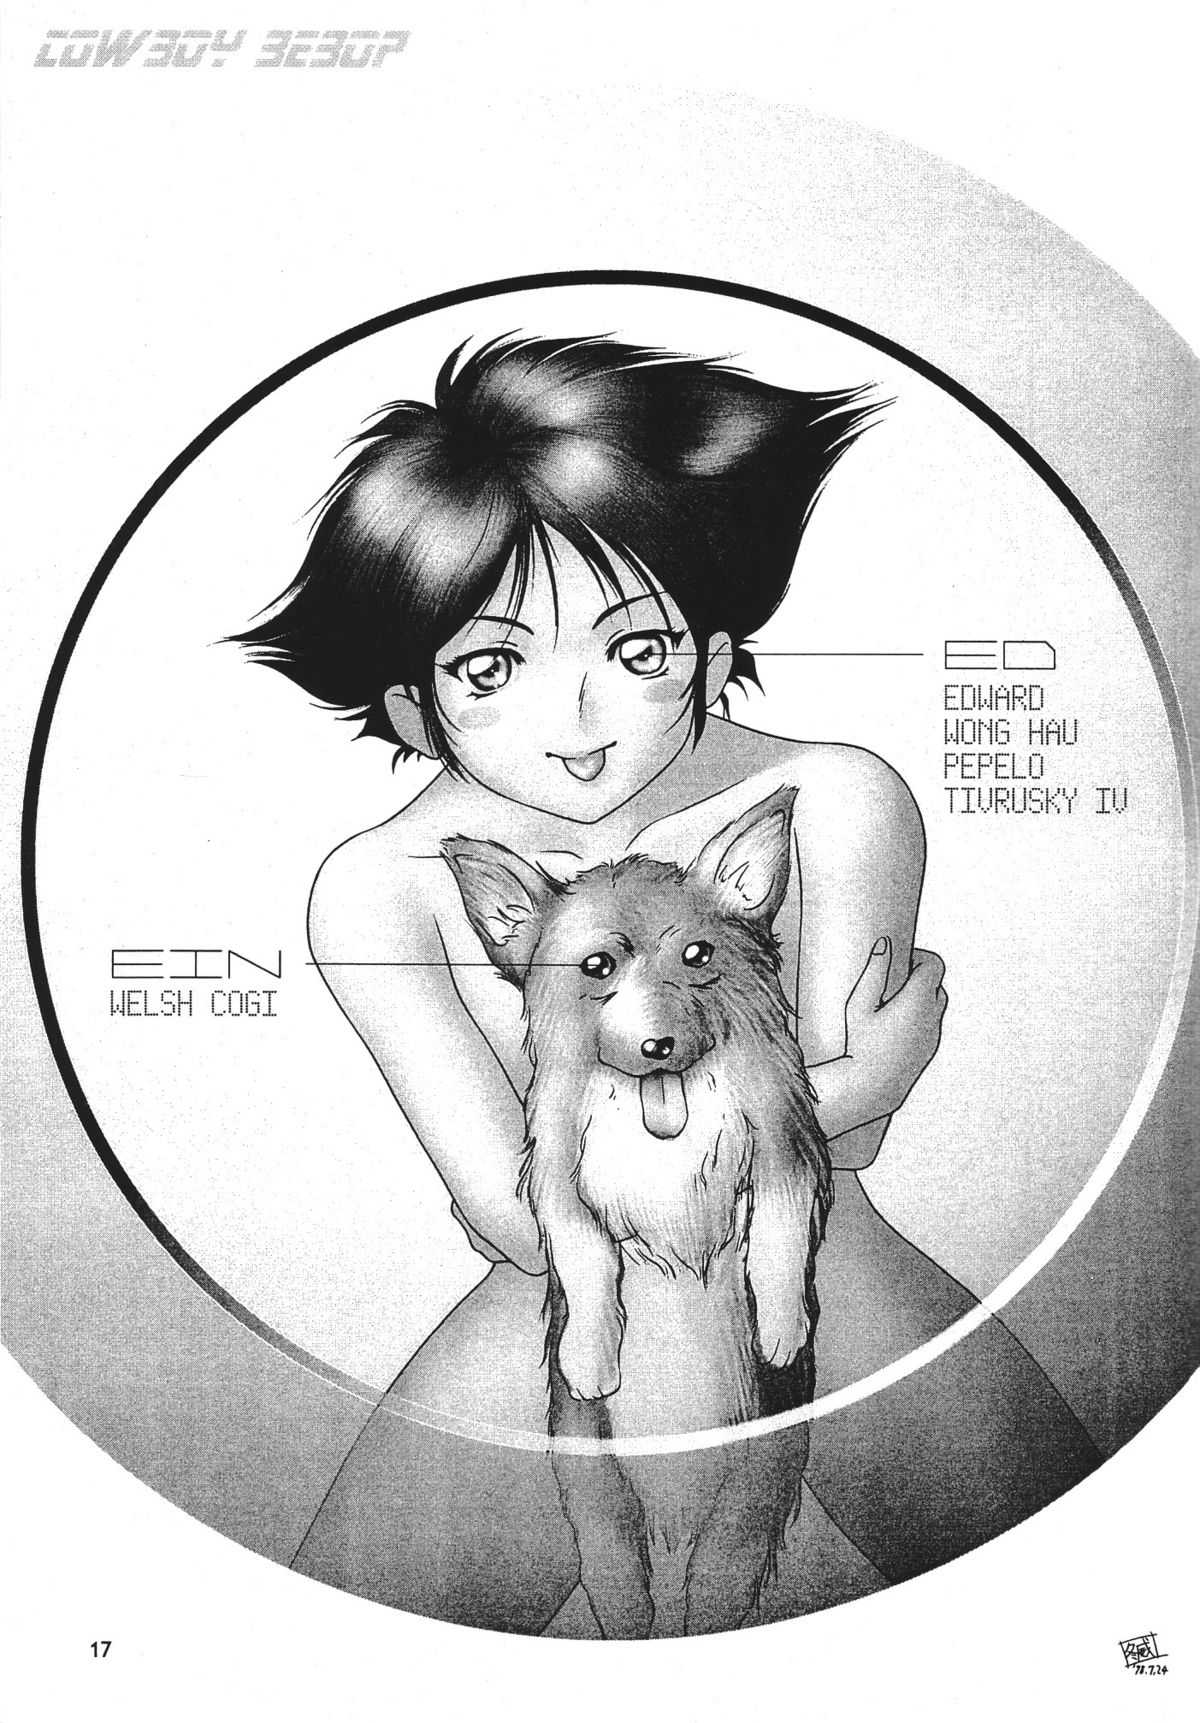 [Seishun No Nigirikobushi!] Favorite Visions 2 (Sailor Moon, AIKa) page 19 full